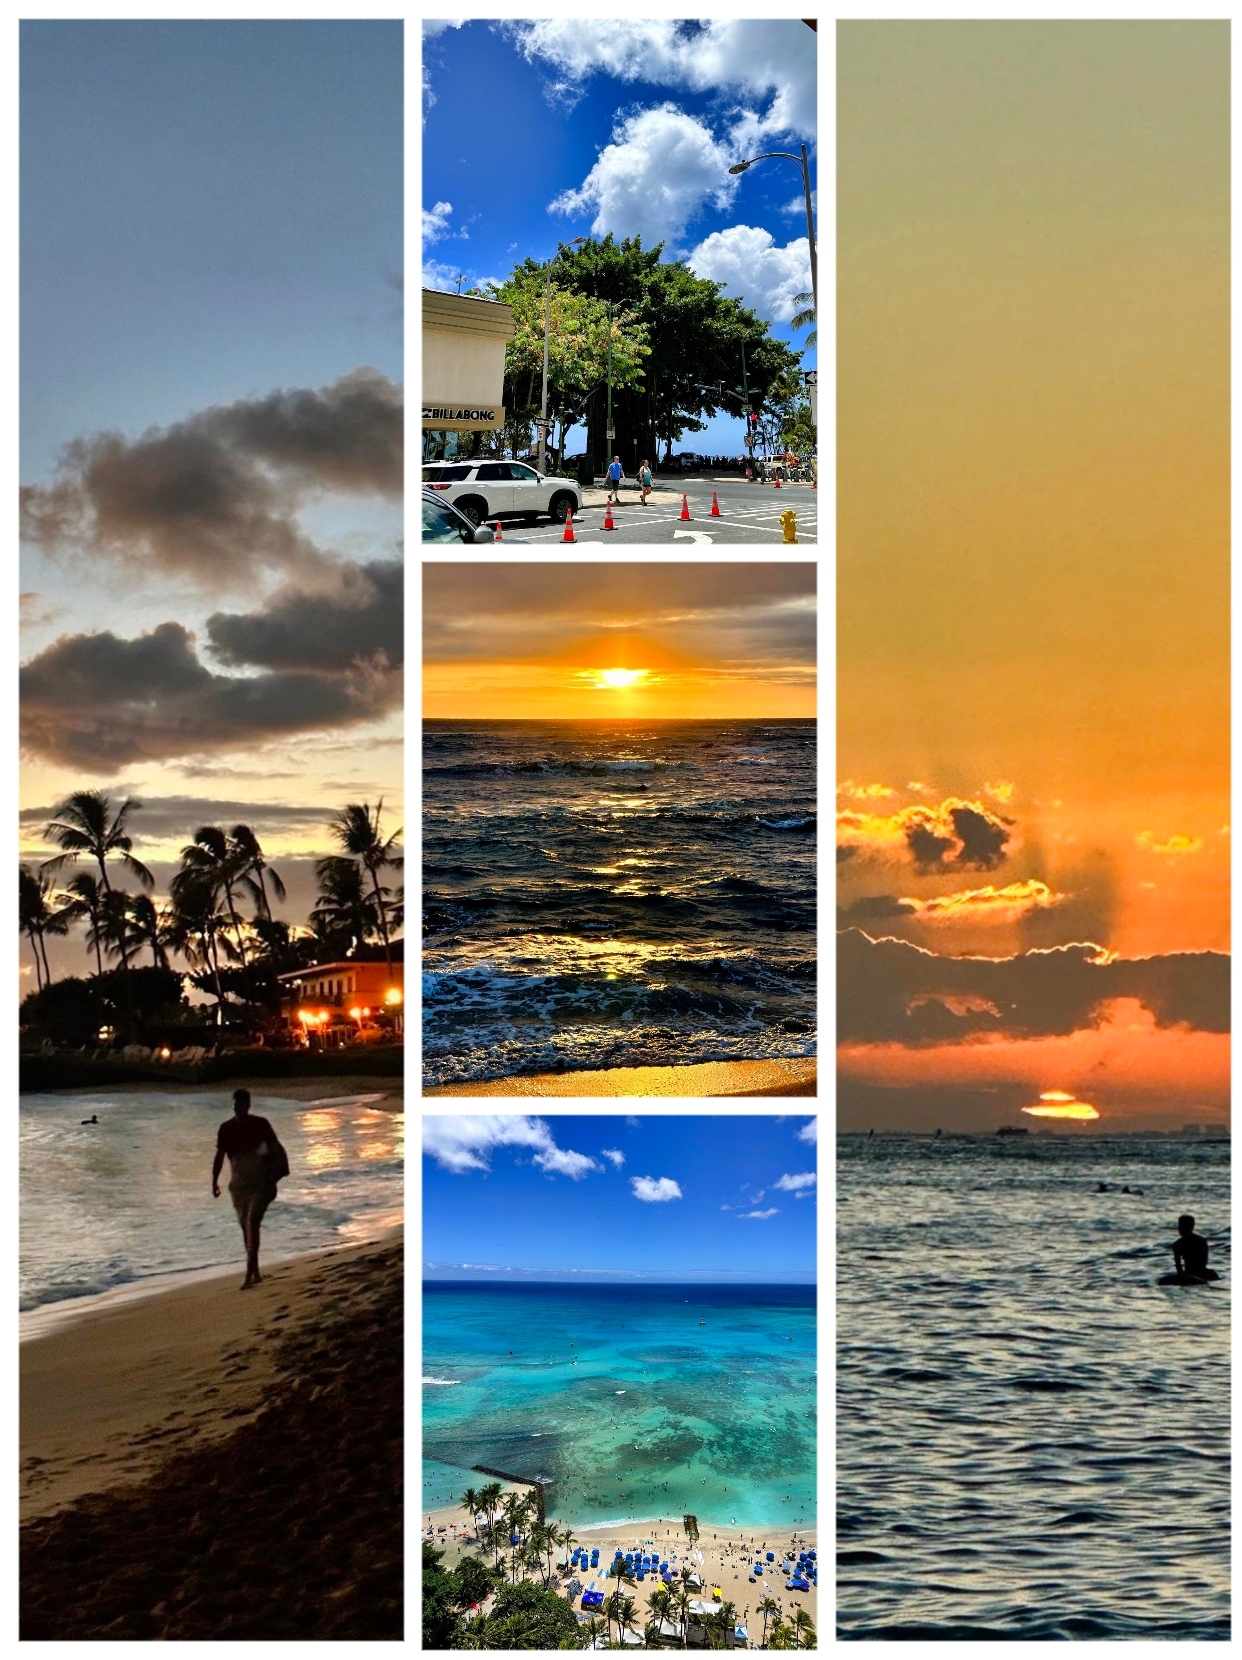 夏威夷是一个拥有美丽海滩、丰富文化和多样活动的热门旅游目的地。带你体验夏威夷的几个主要岛屿。以下是一